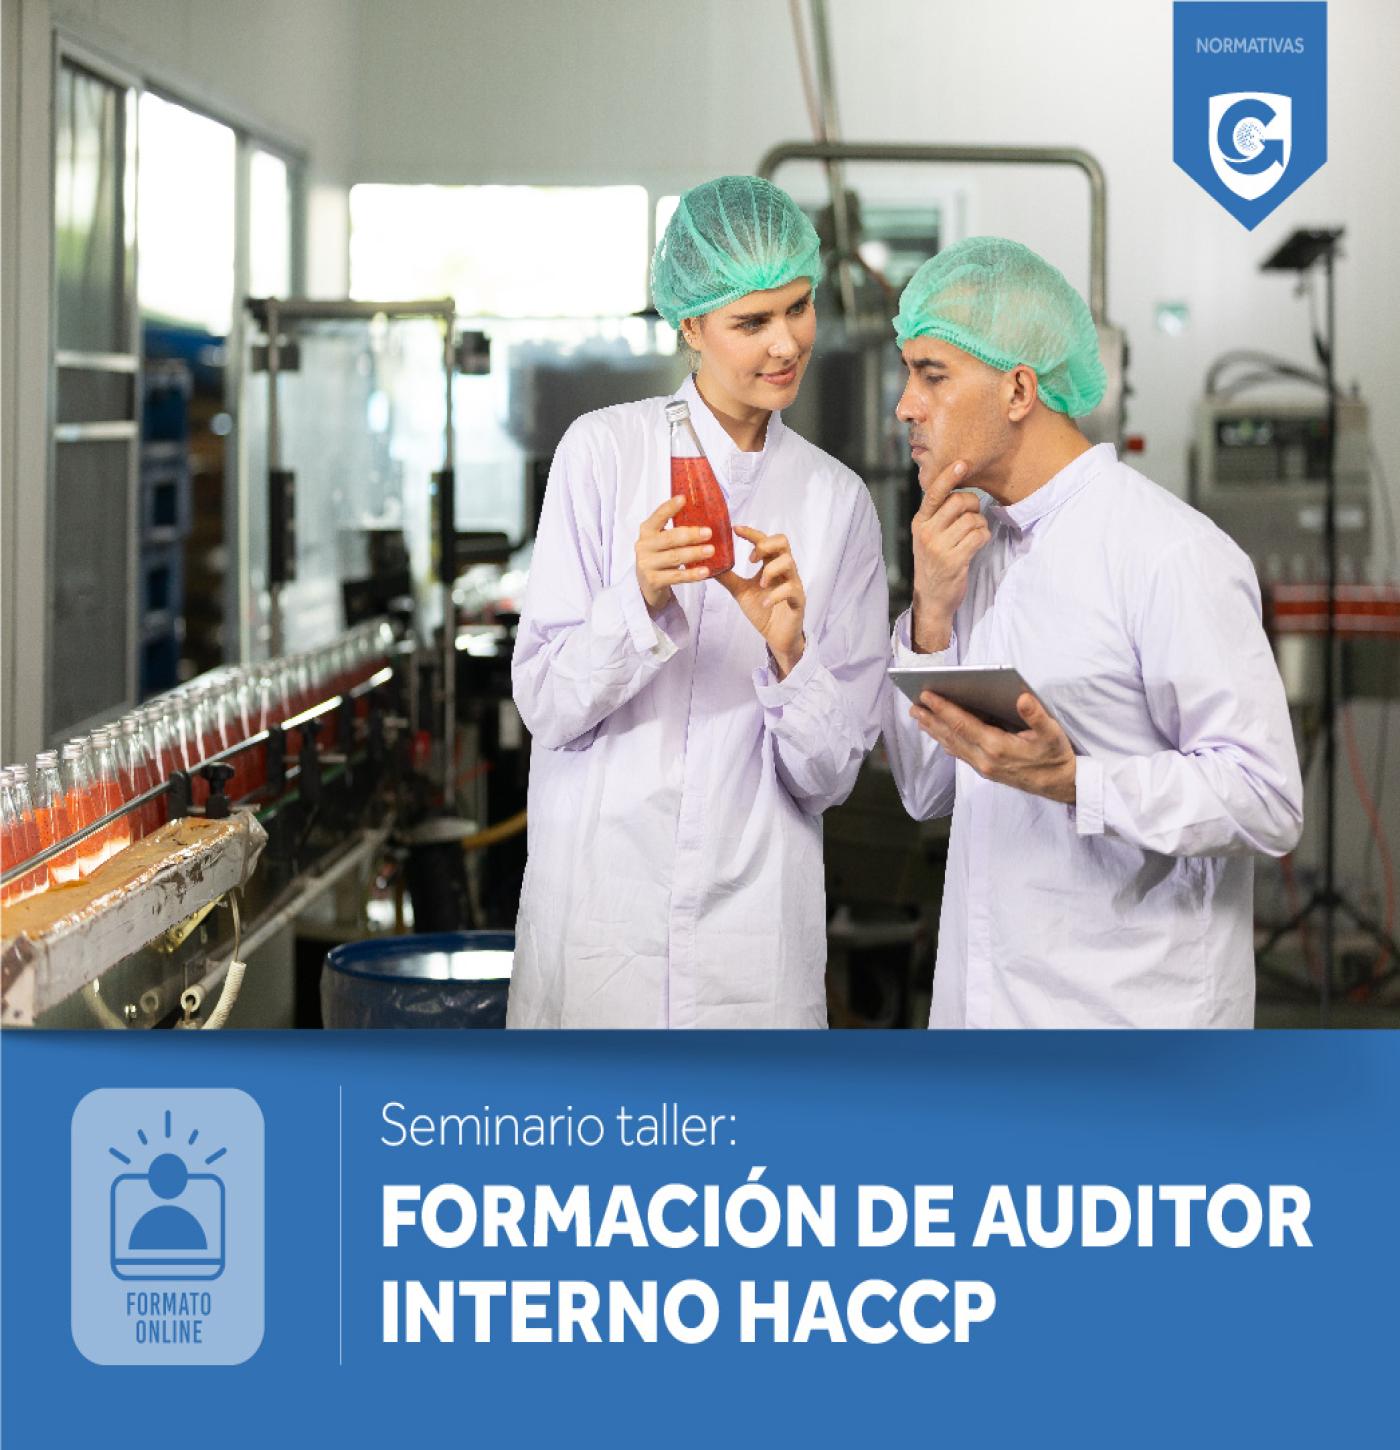 FORMACIÓN DE AUDITOR INTERNO HACCP